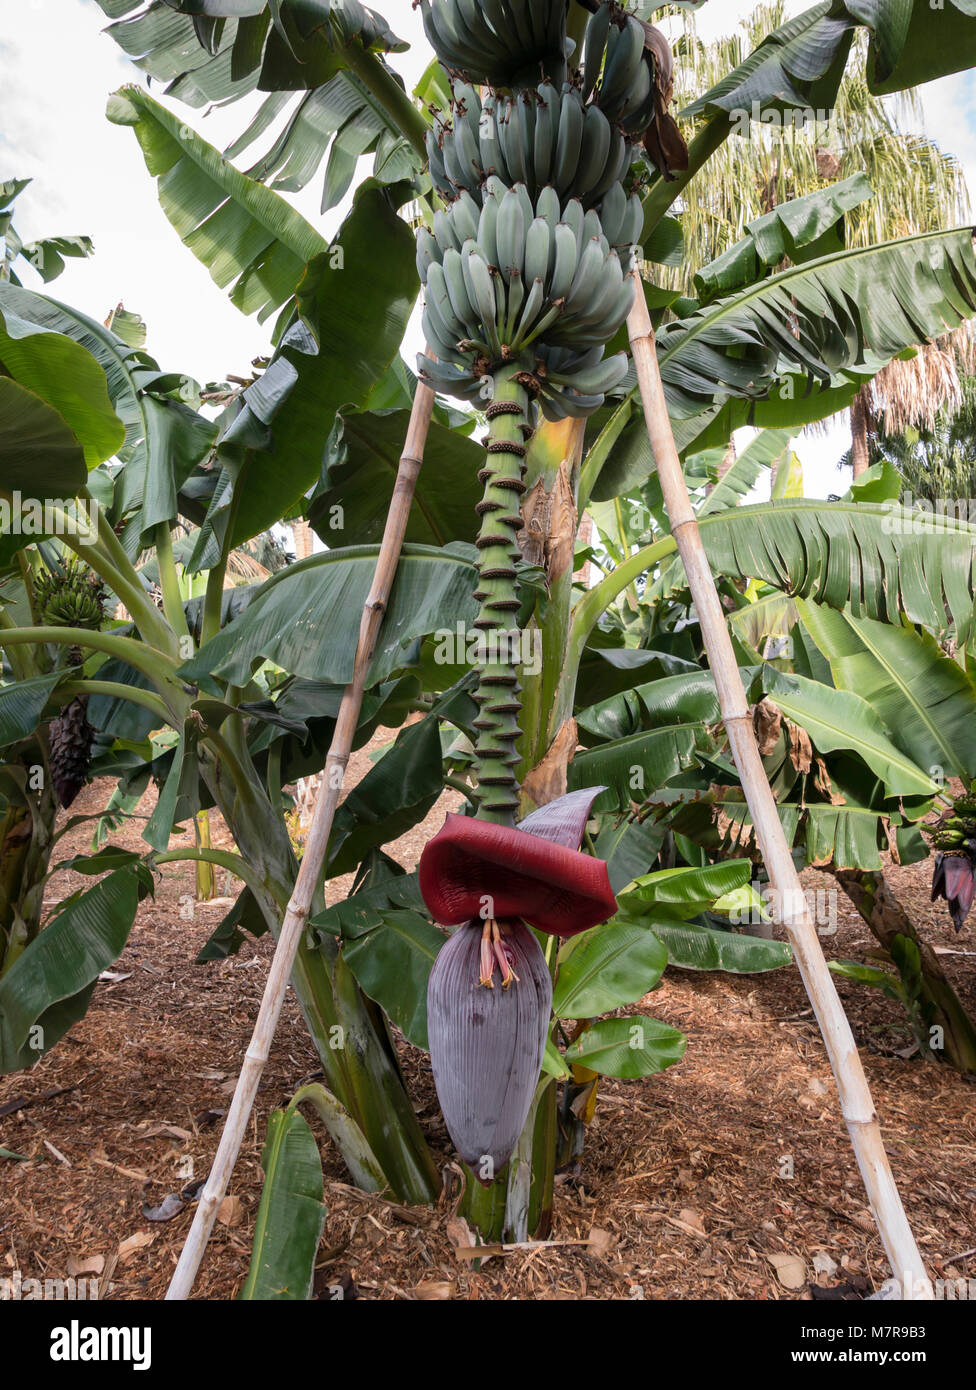 Pianta di banana rossa fiorente, che mostra la fioritura della banana. Palmetum, giardino botanico, Santa Cruz de Tenerife, Tenerife, Spagna. Foto Stock